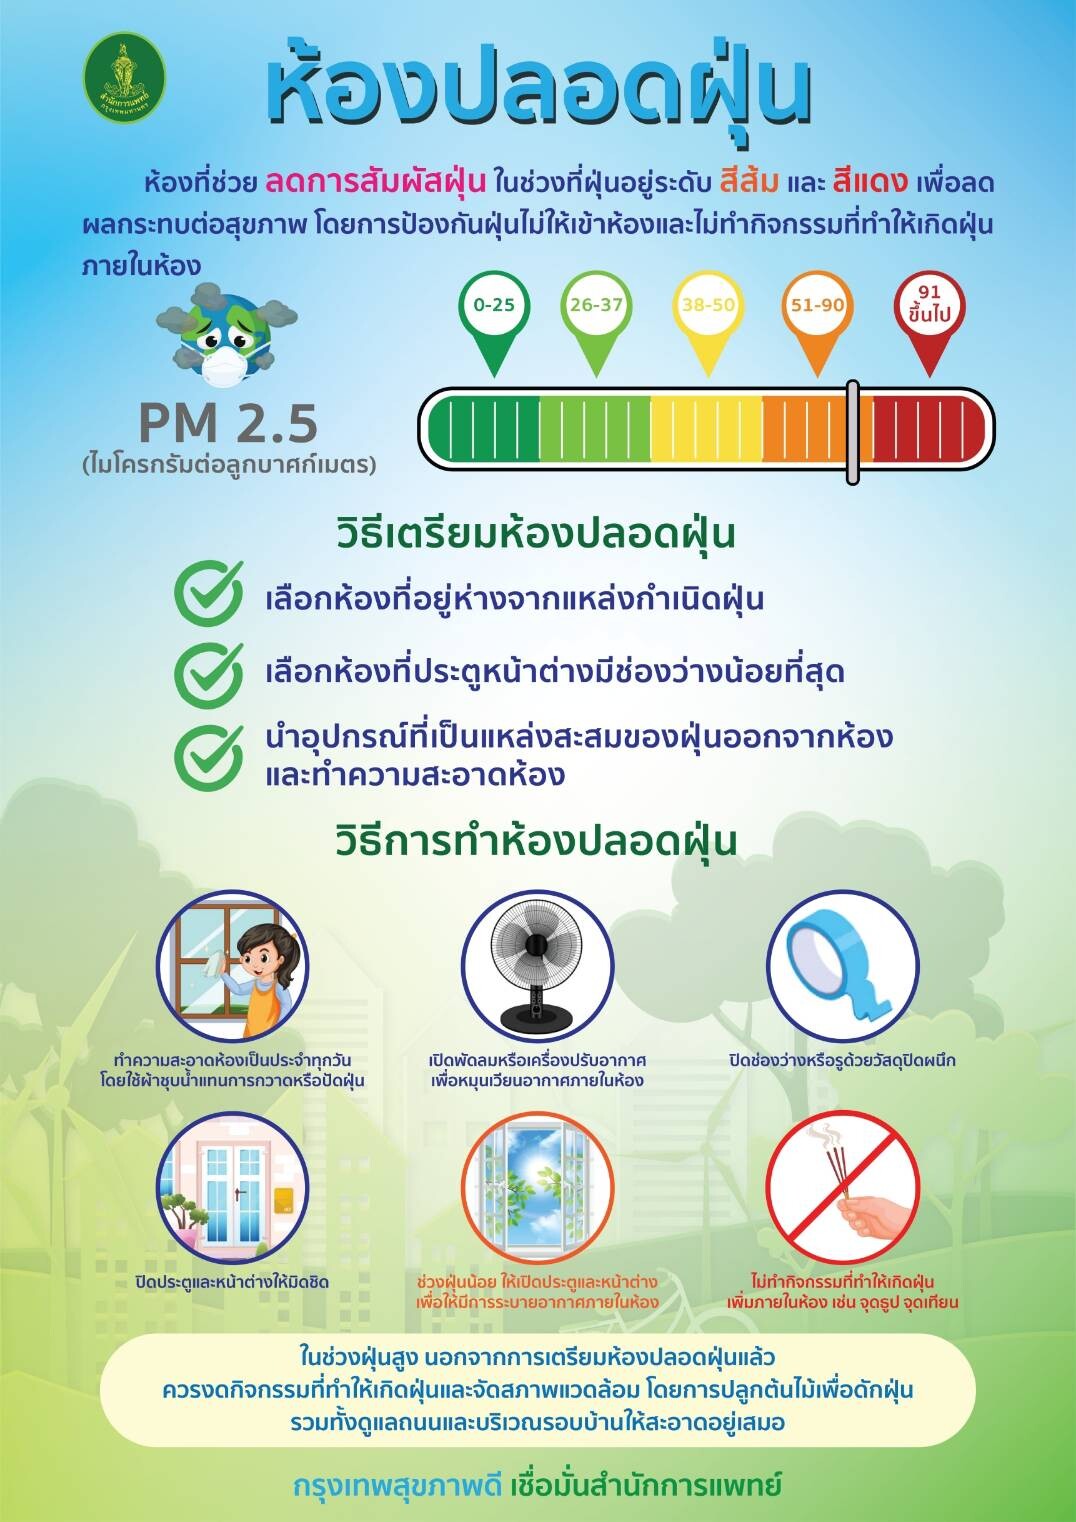 กทม.จับมือภาคีเครือข่ายรุกดูแลสุขภาพกลุ่มเปราะบาง ป้องกันผลกระทบจากฝุ่น PM2.5